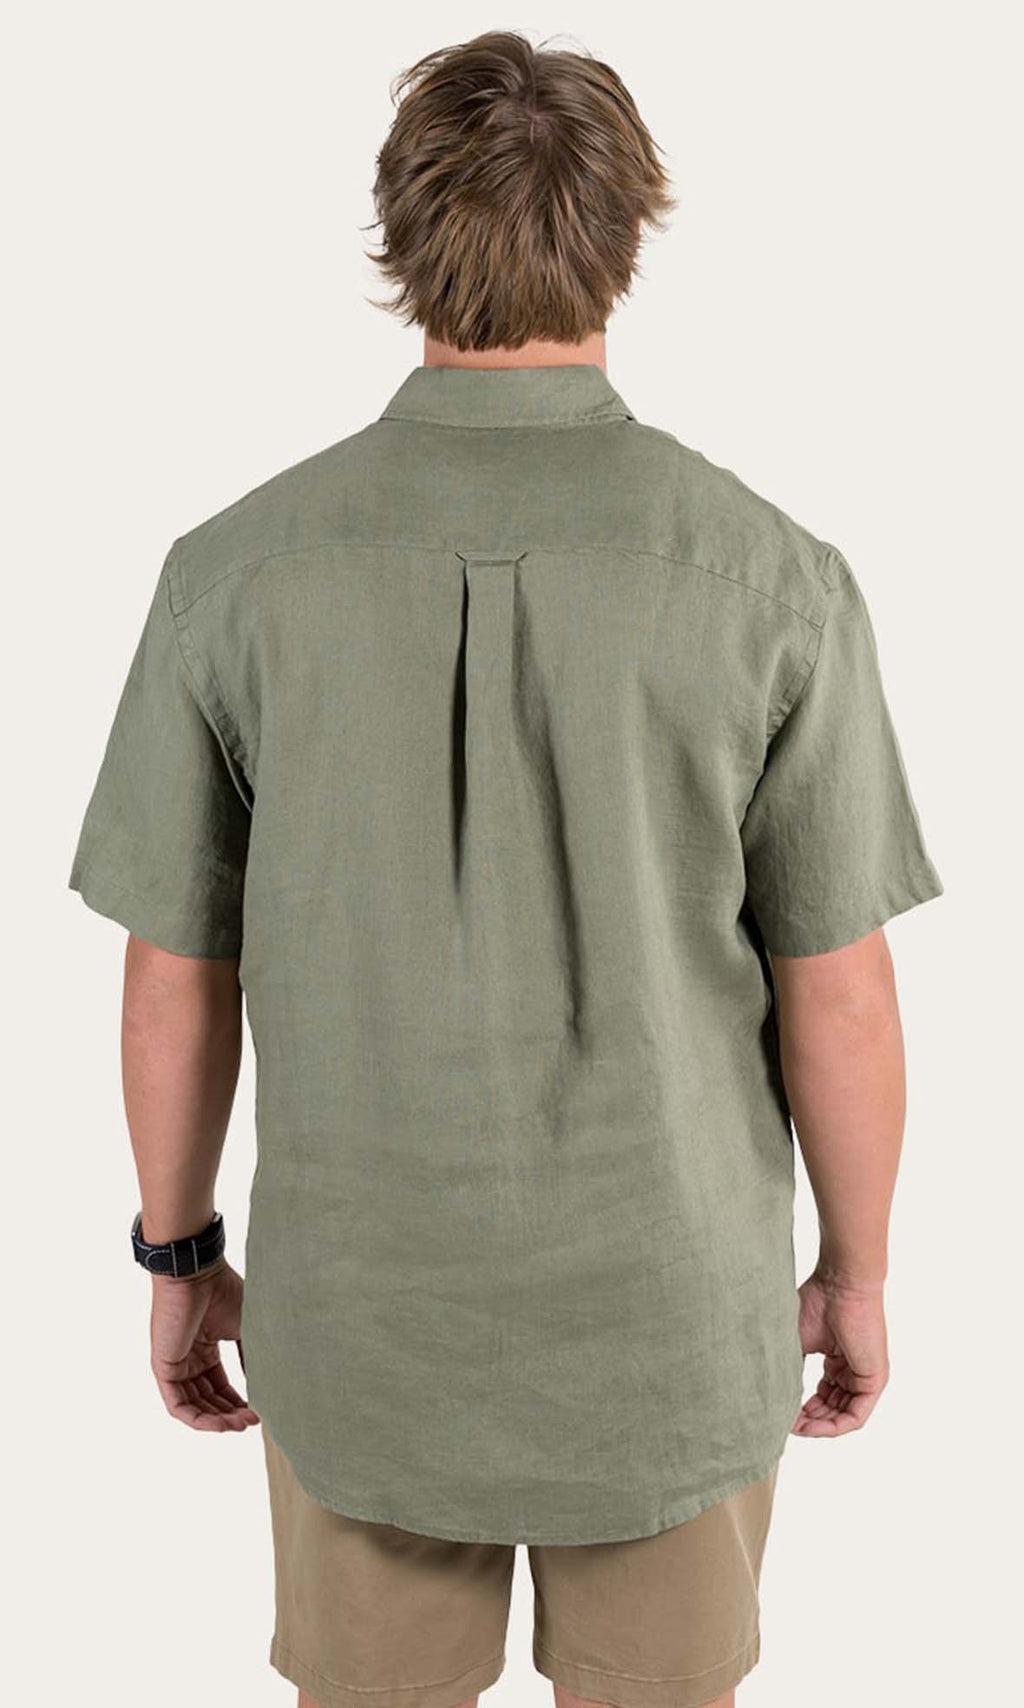 Relaxed Linen Shirt Dawson Short Sleeve